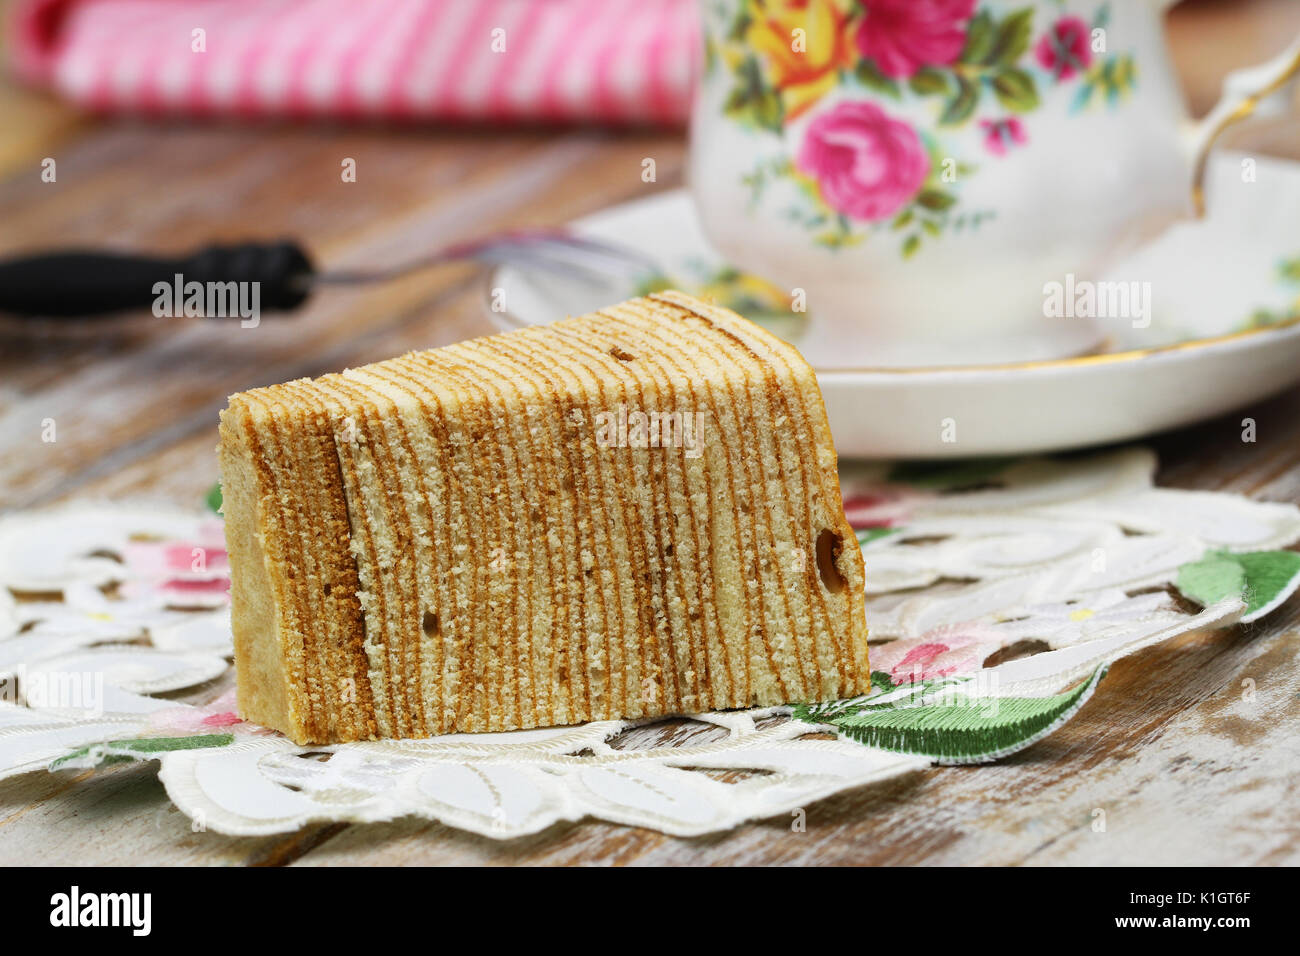 Sekacz, traditionelle polnische Biskuitboden auf Serviette mit Tasse Tee Stockfoto